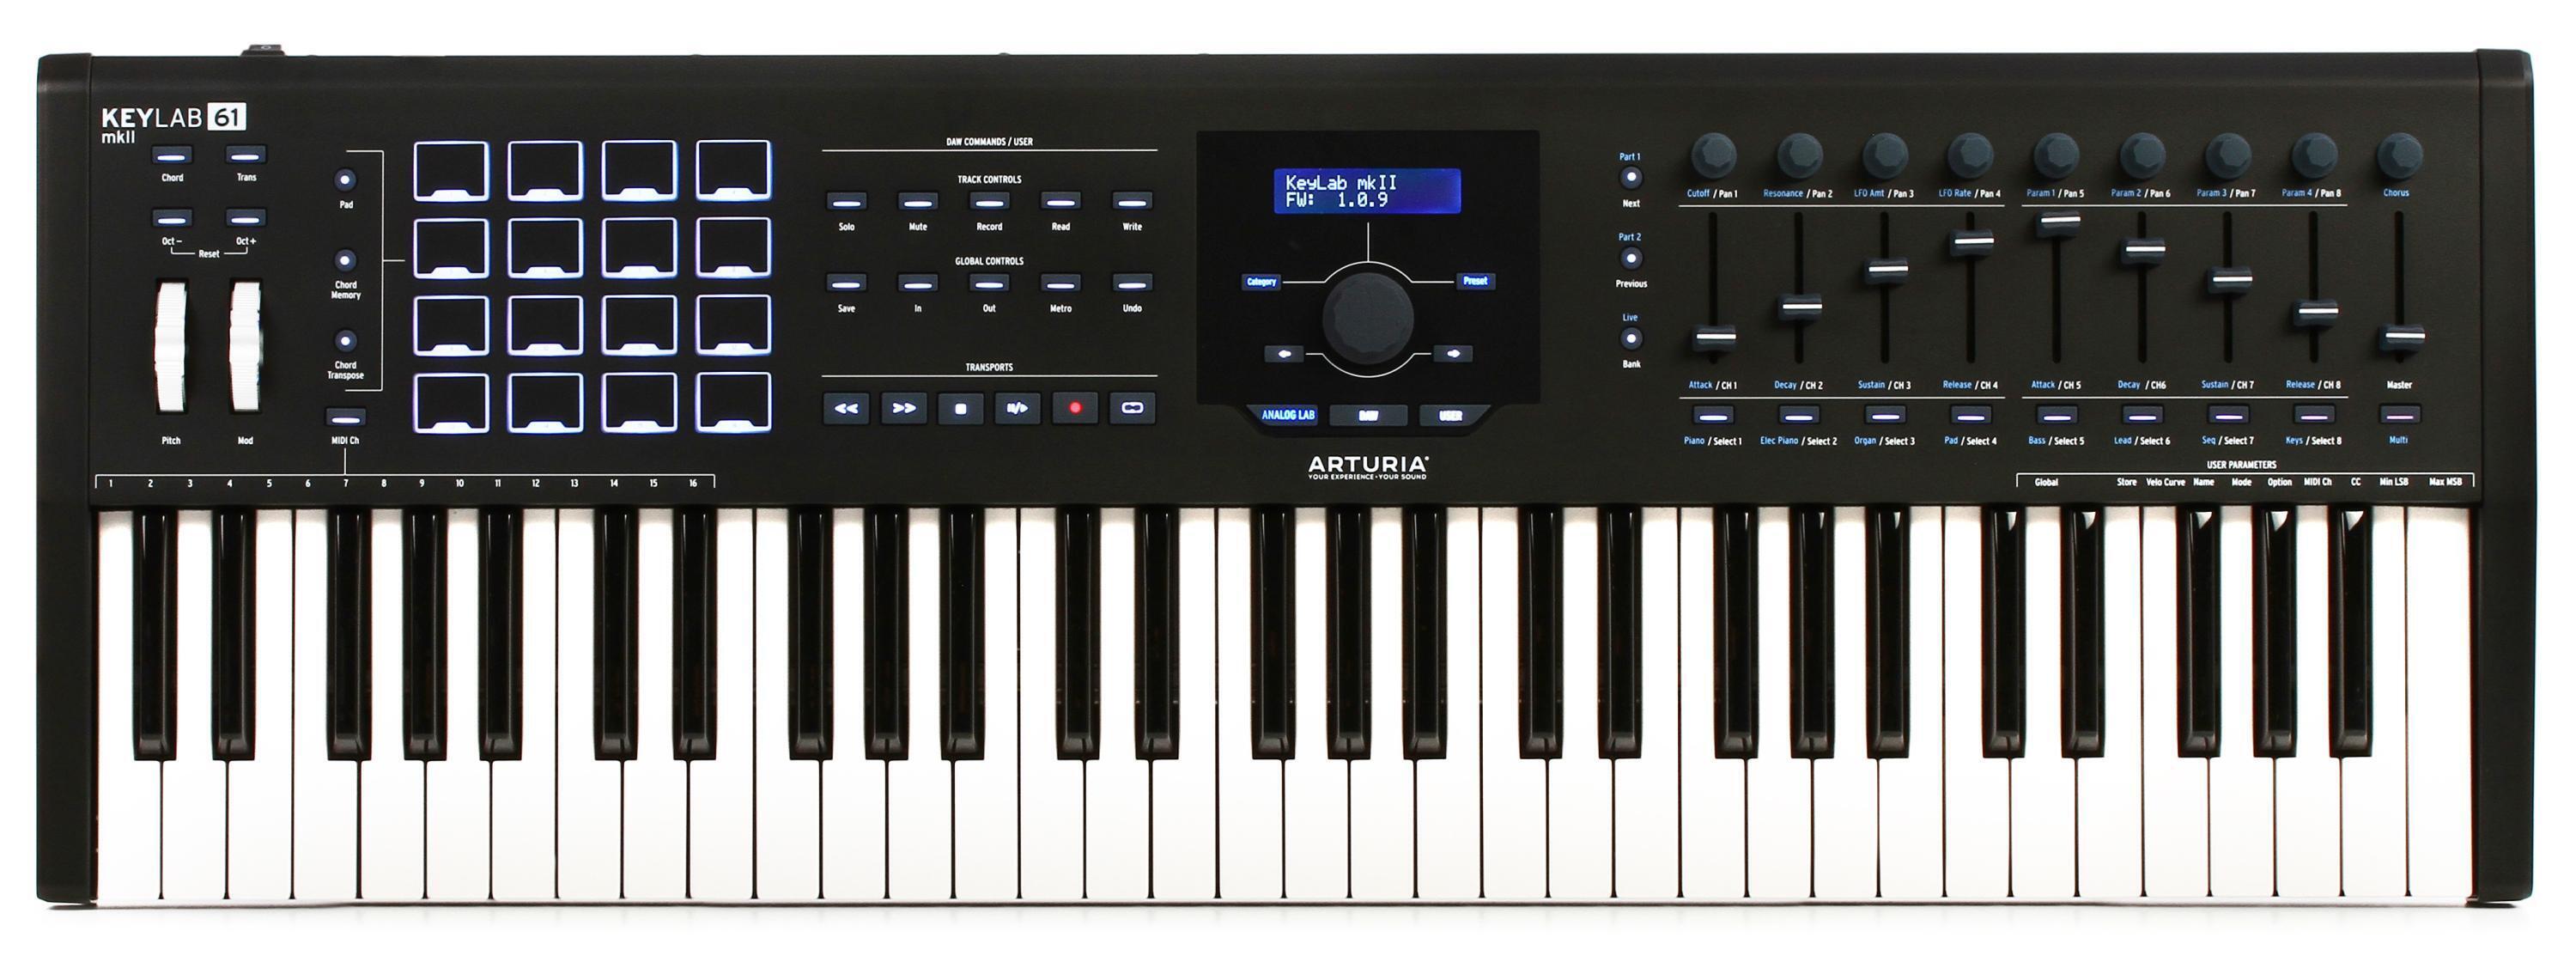 Arturia KeyLab 61 MkII 61-key Keyboard Controller - Black